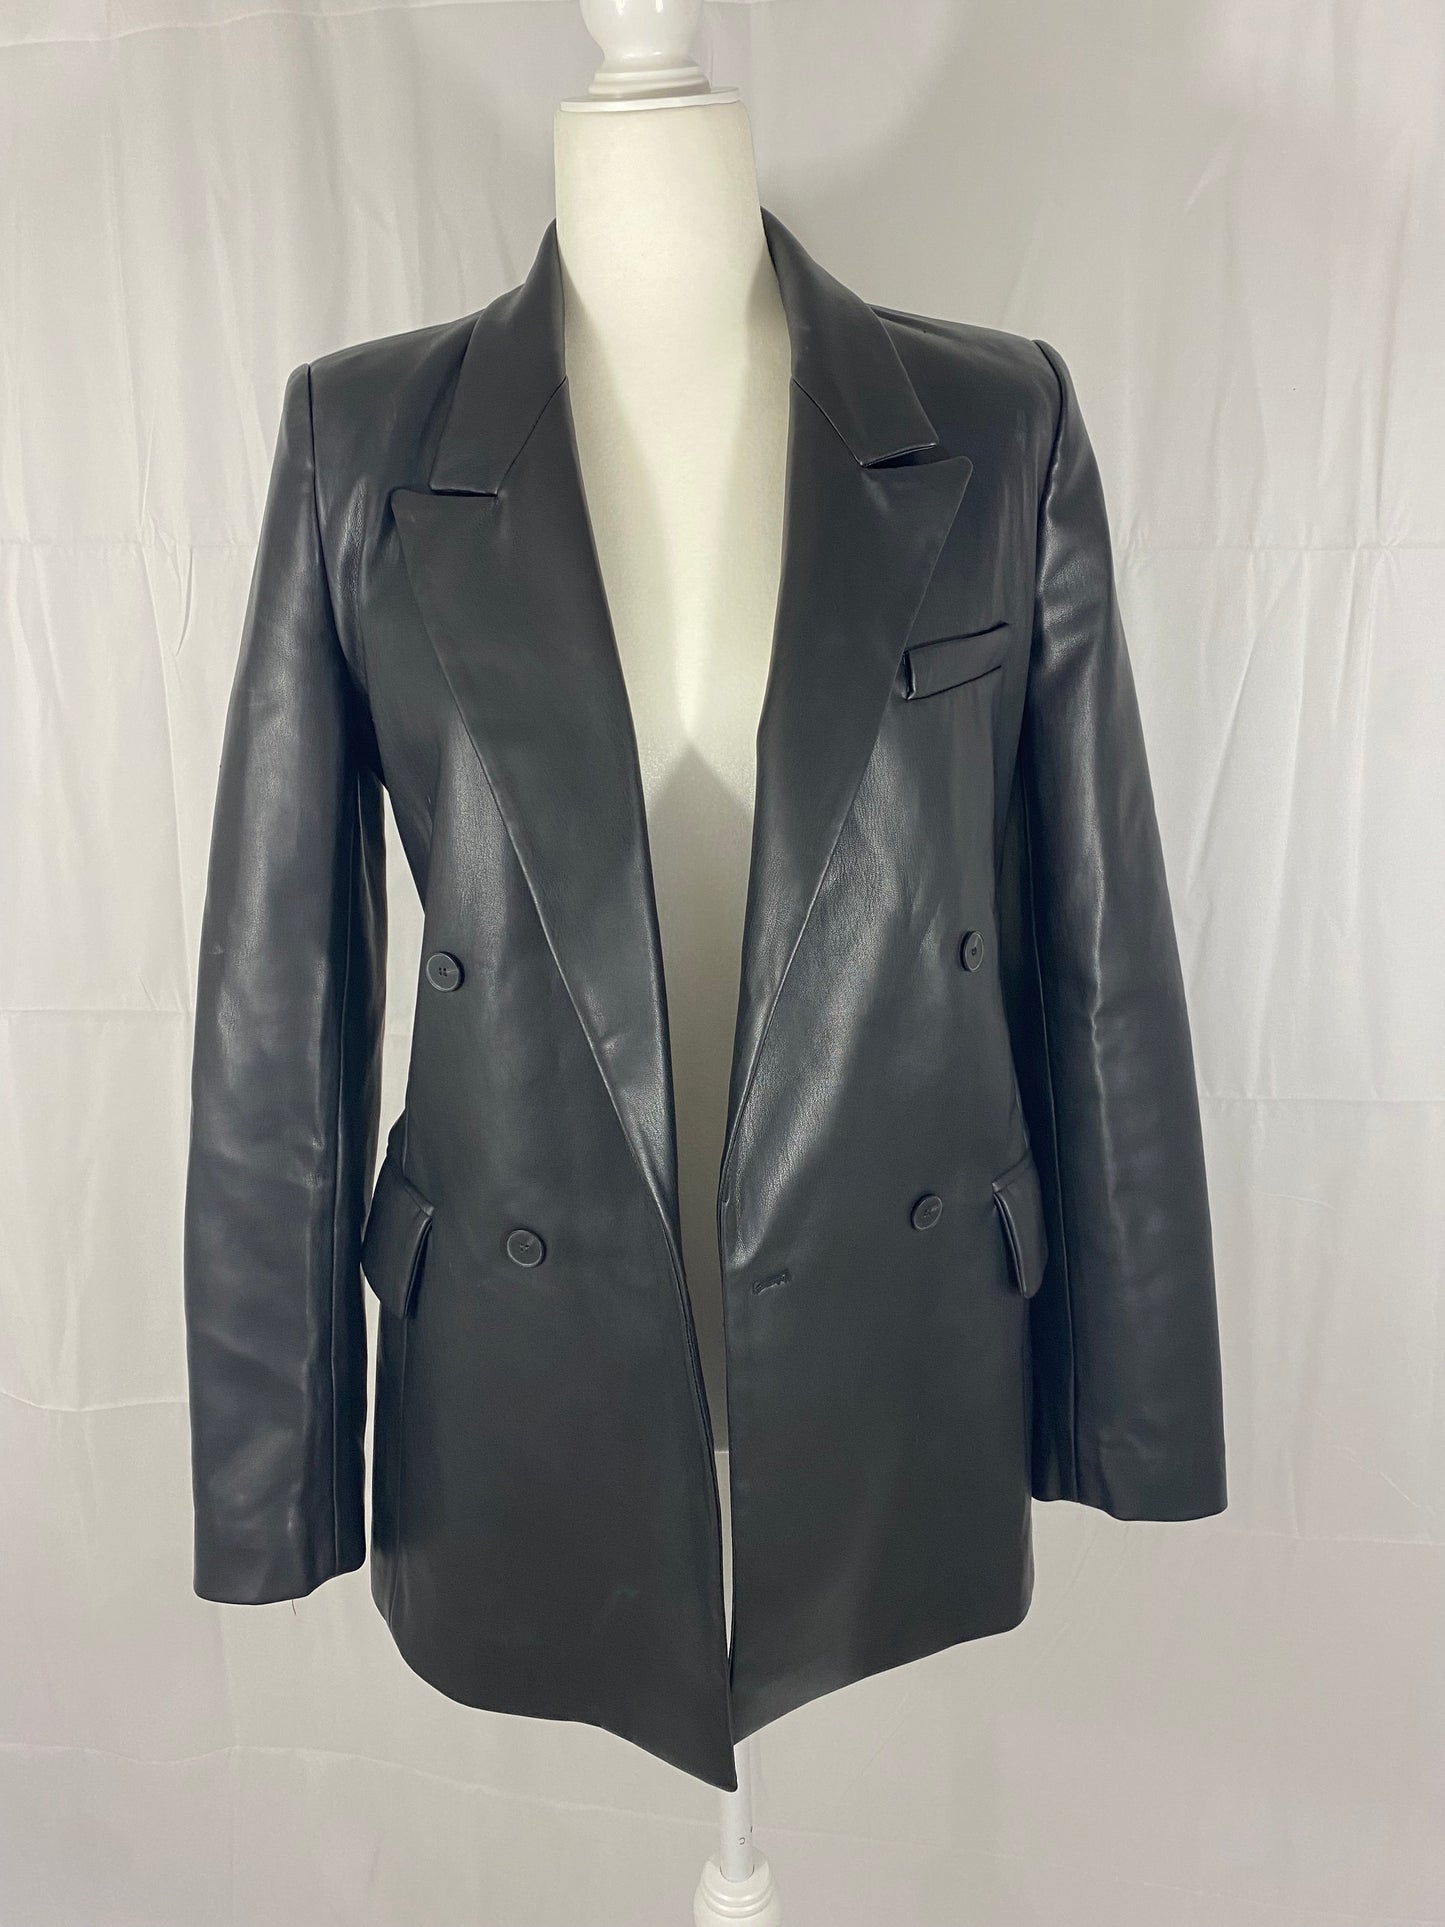 ZARA leather blazer